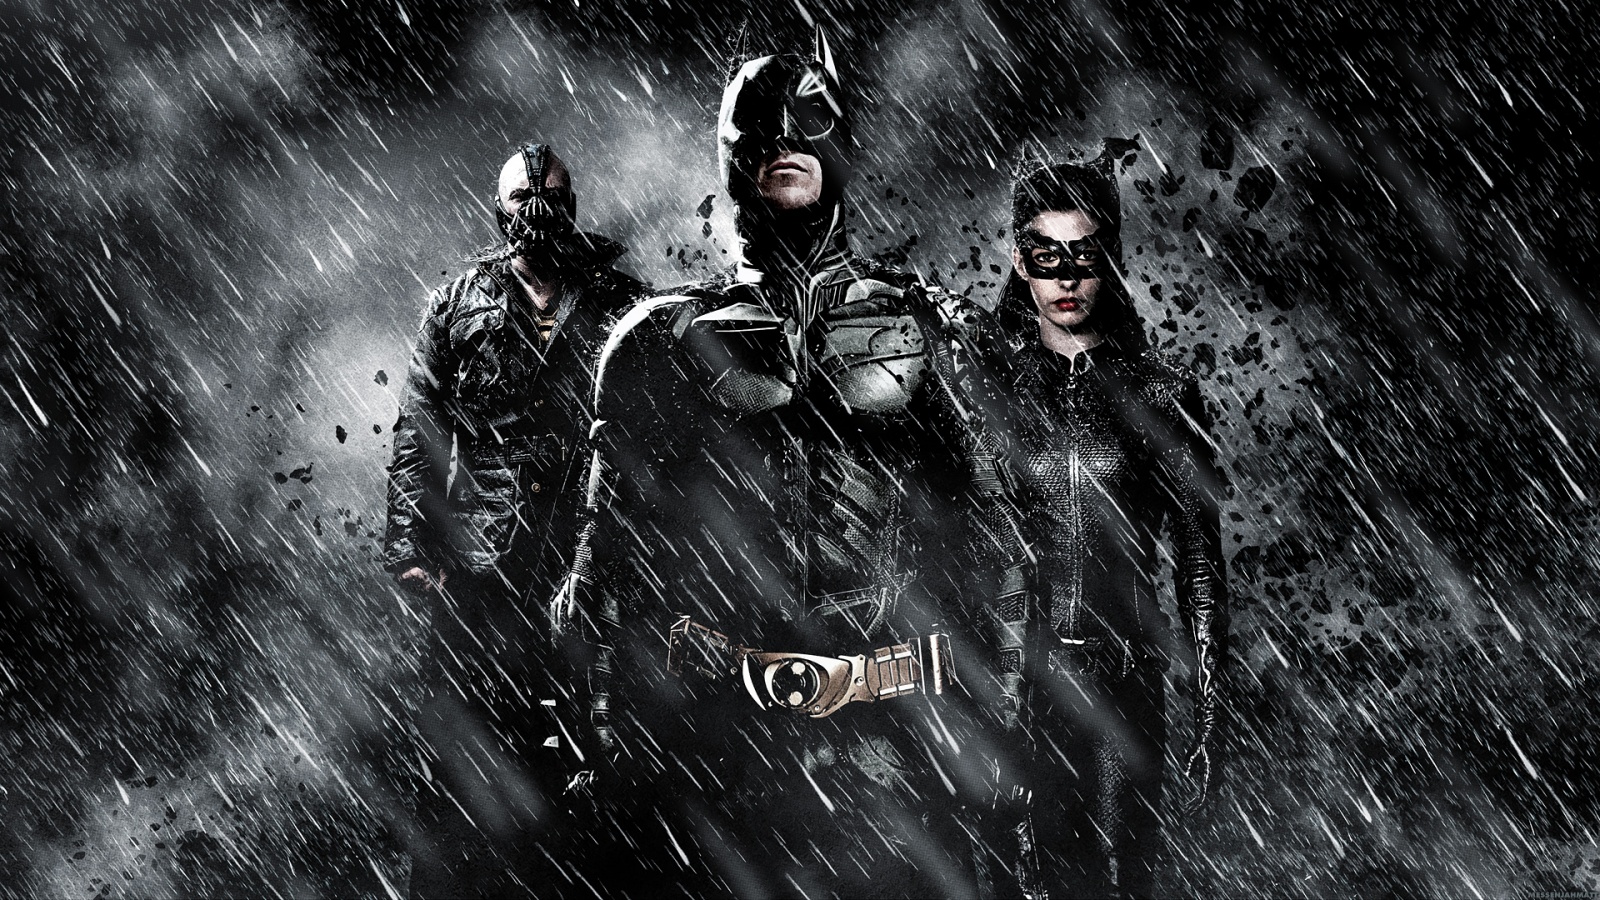 Dark Knight Rises HD Poster Wallpaper